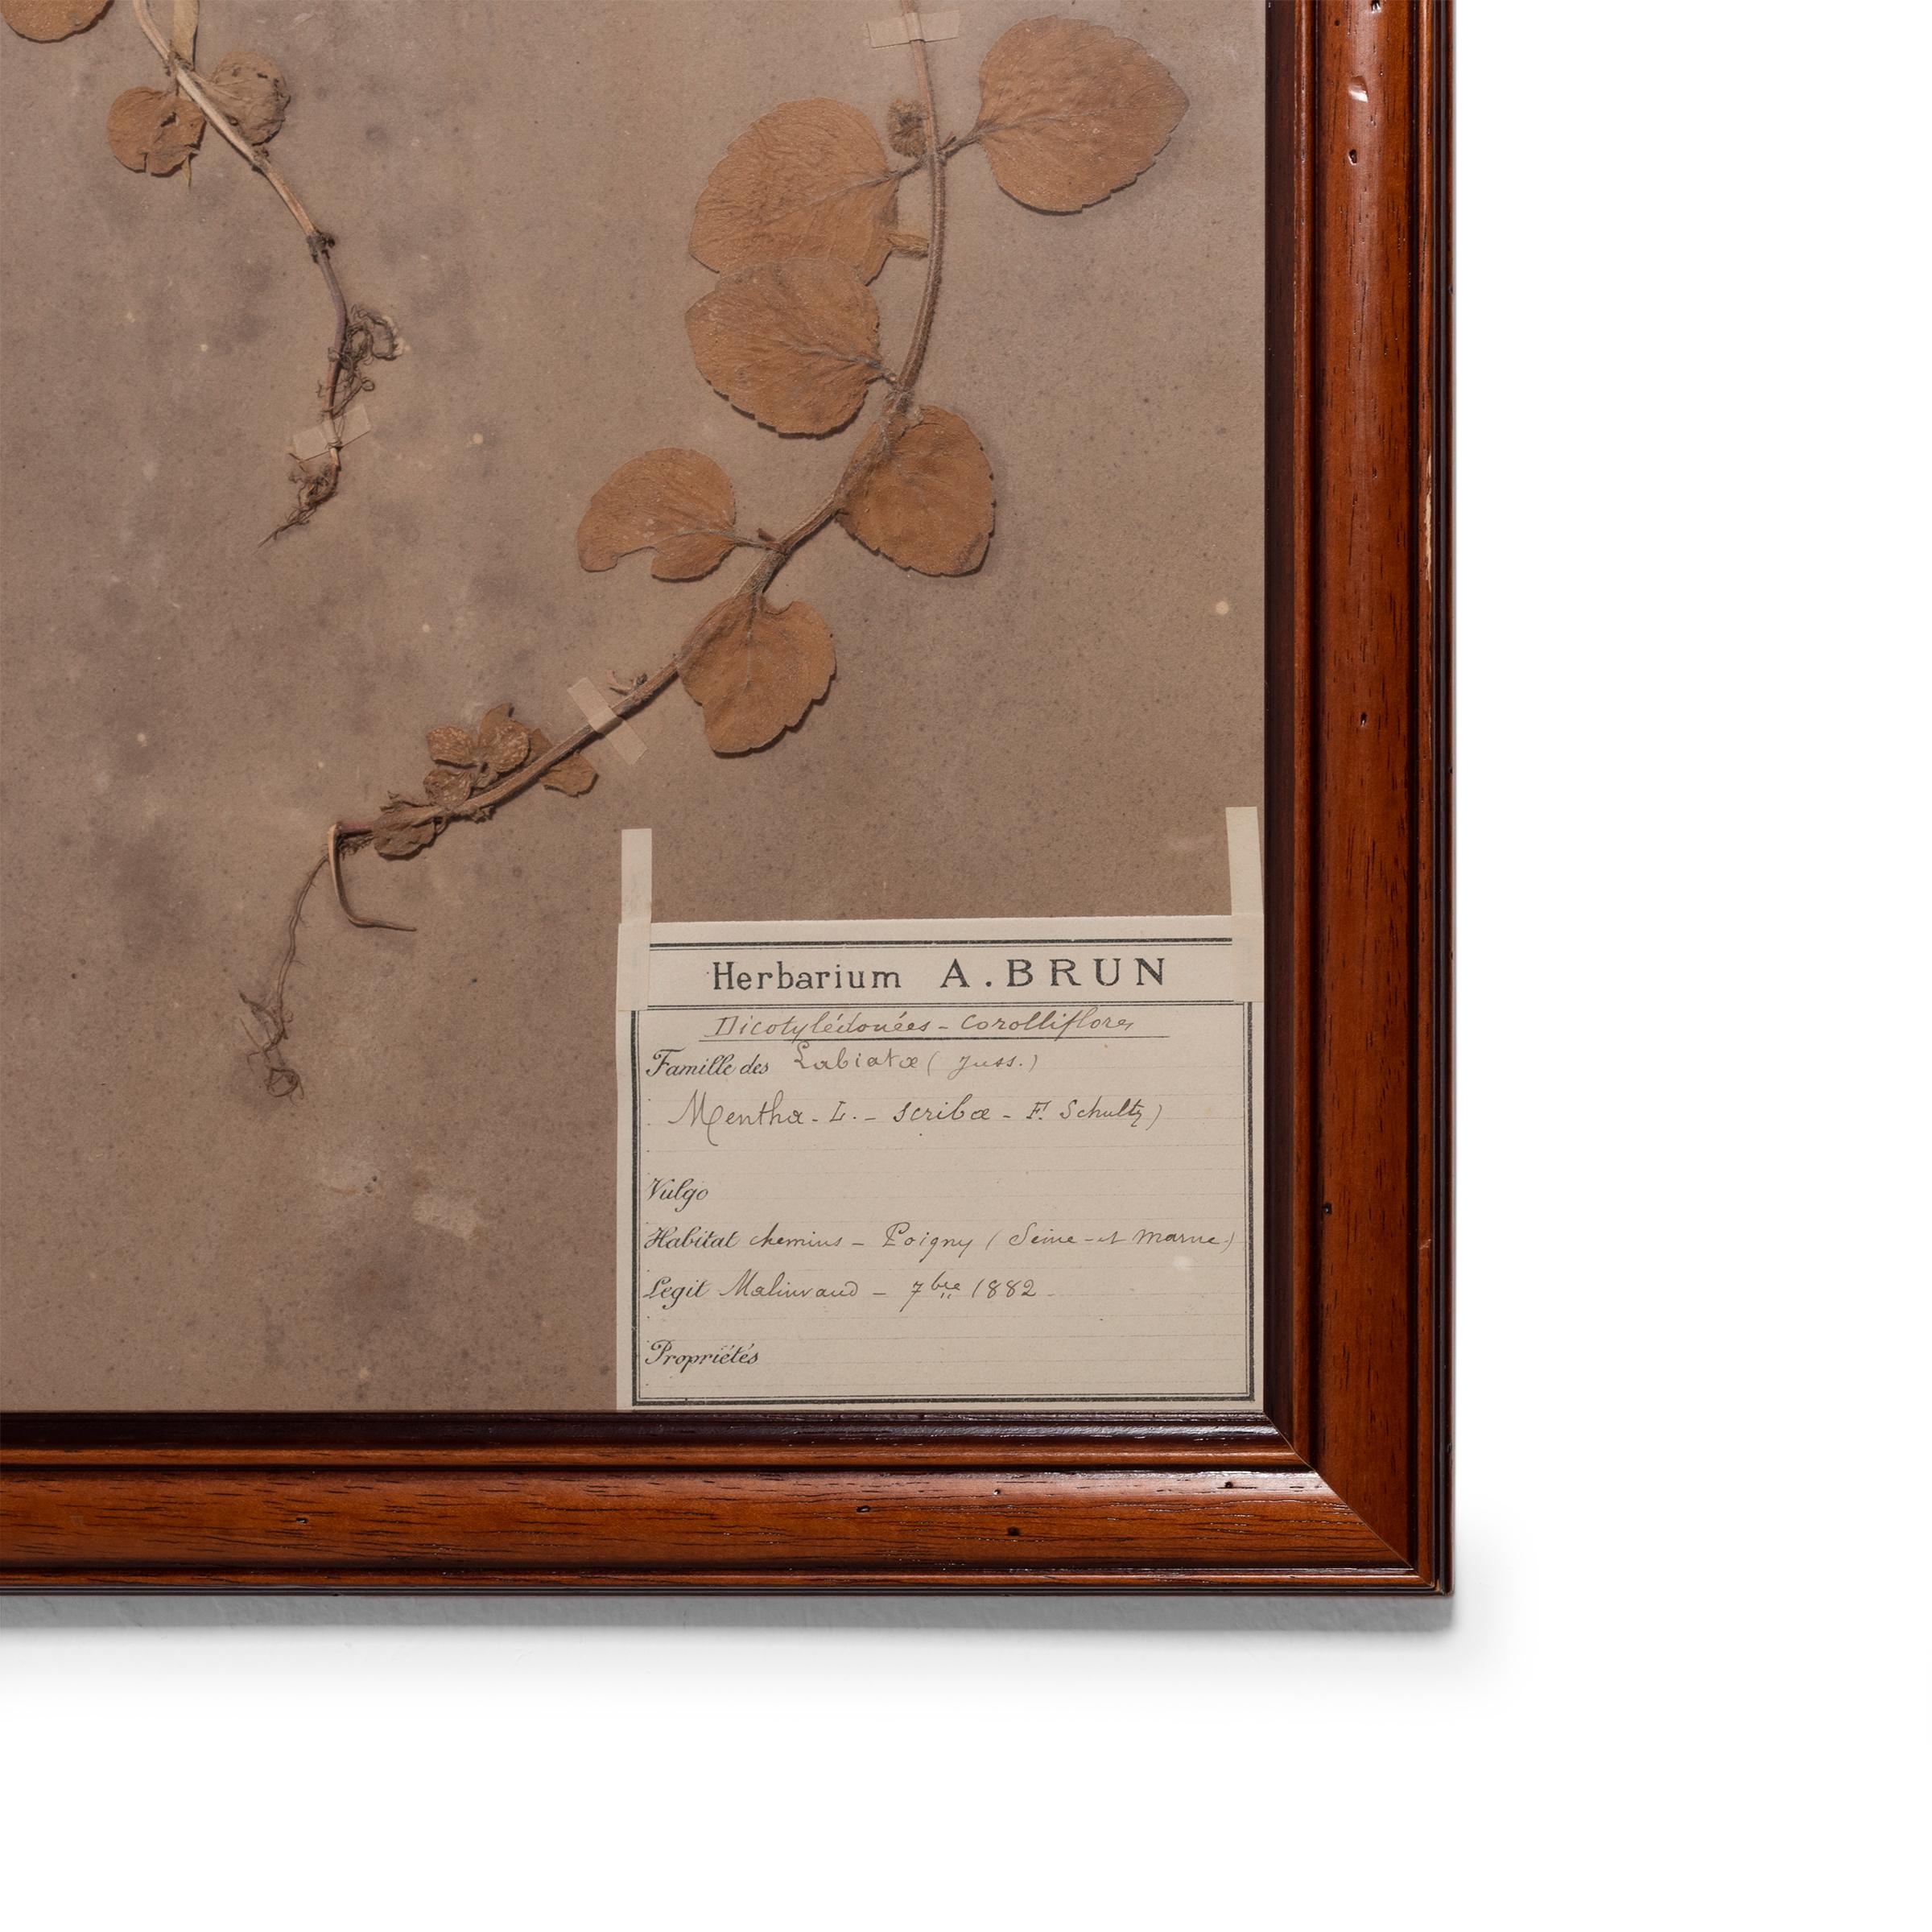 Diese vier botanischen Exemplare aus dem Herbarium von A. Brun wurden im späten 19. Jahrhundert von Hand gepflückt, gepresst und konserviert. Jedes Pflanzenexemplar wird elegant in einem edlen Hartholzrahmen präsentiert und enthält eine